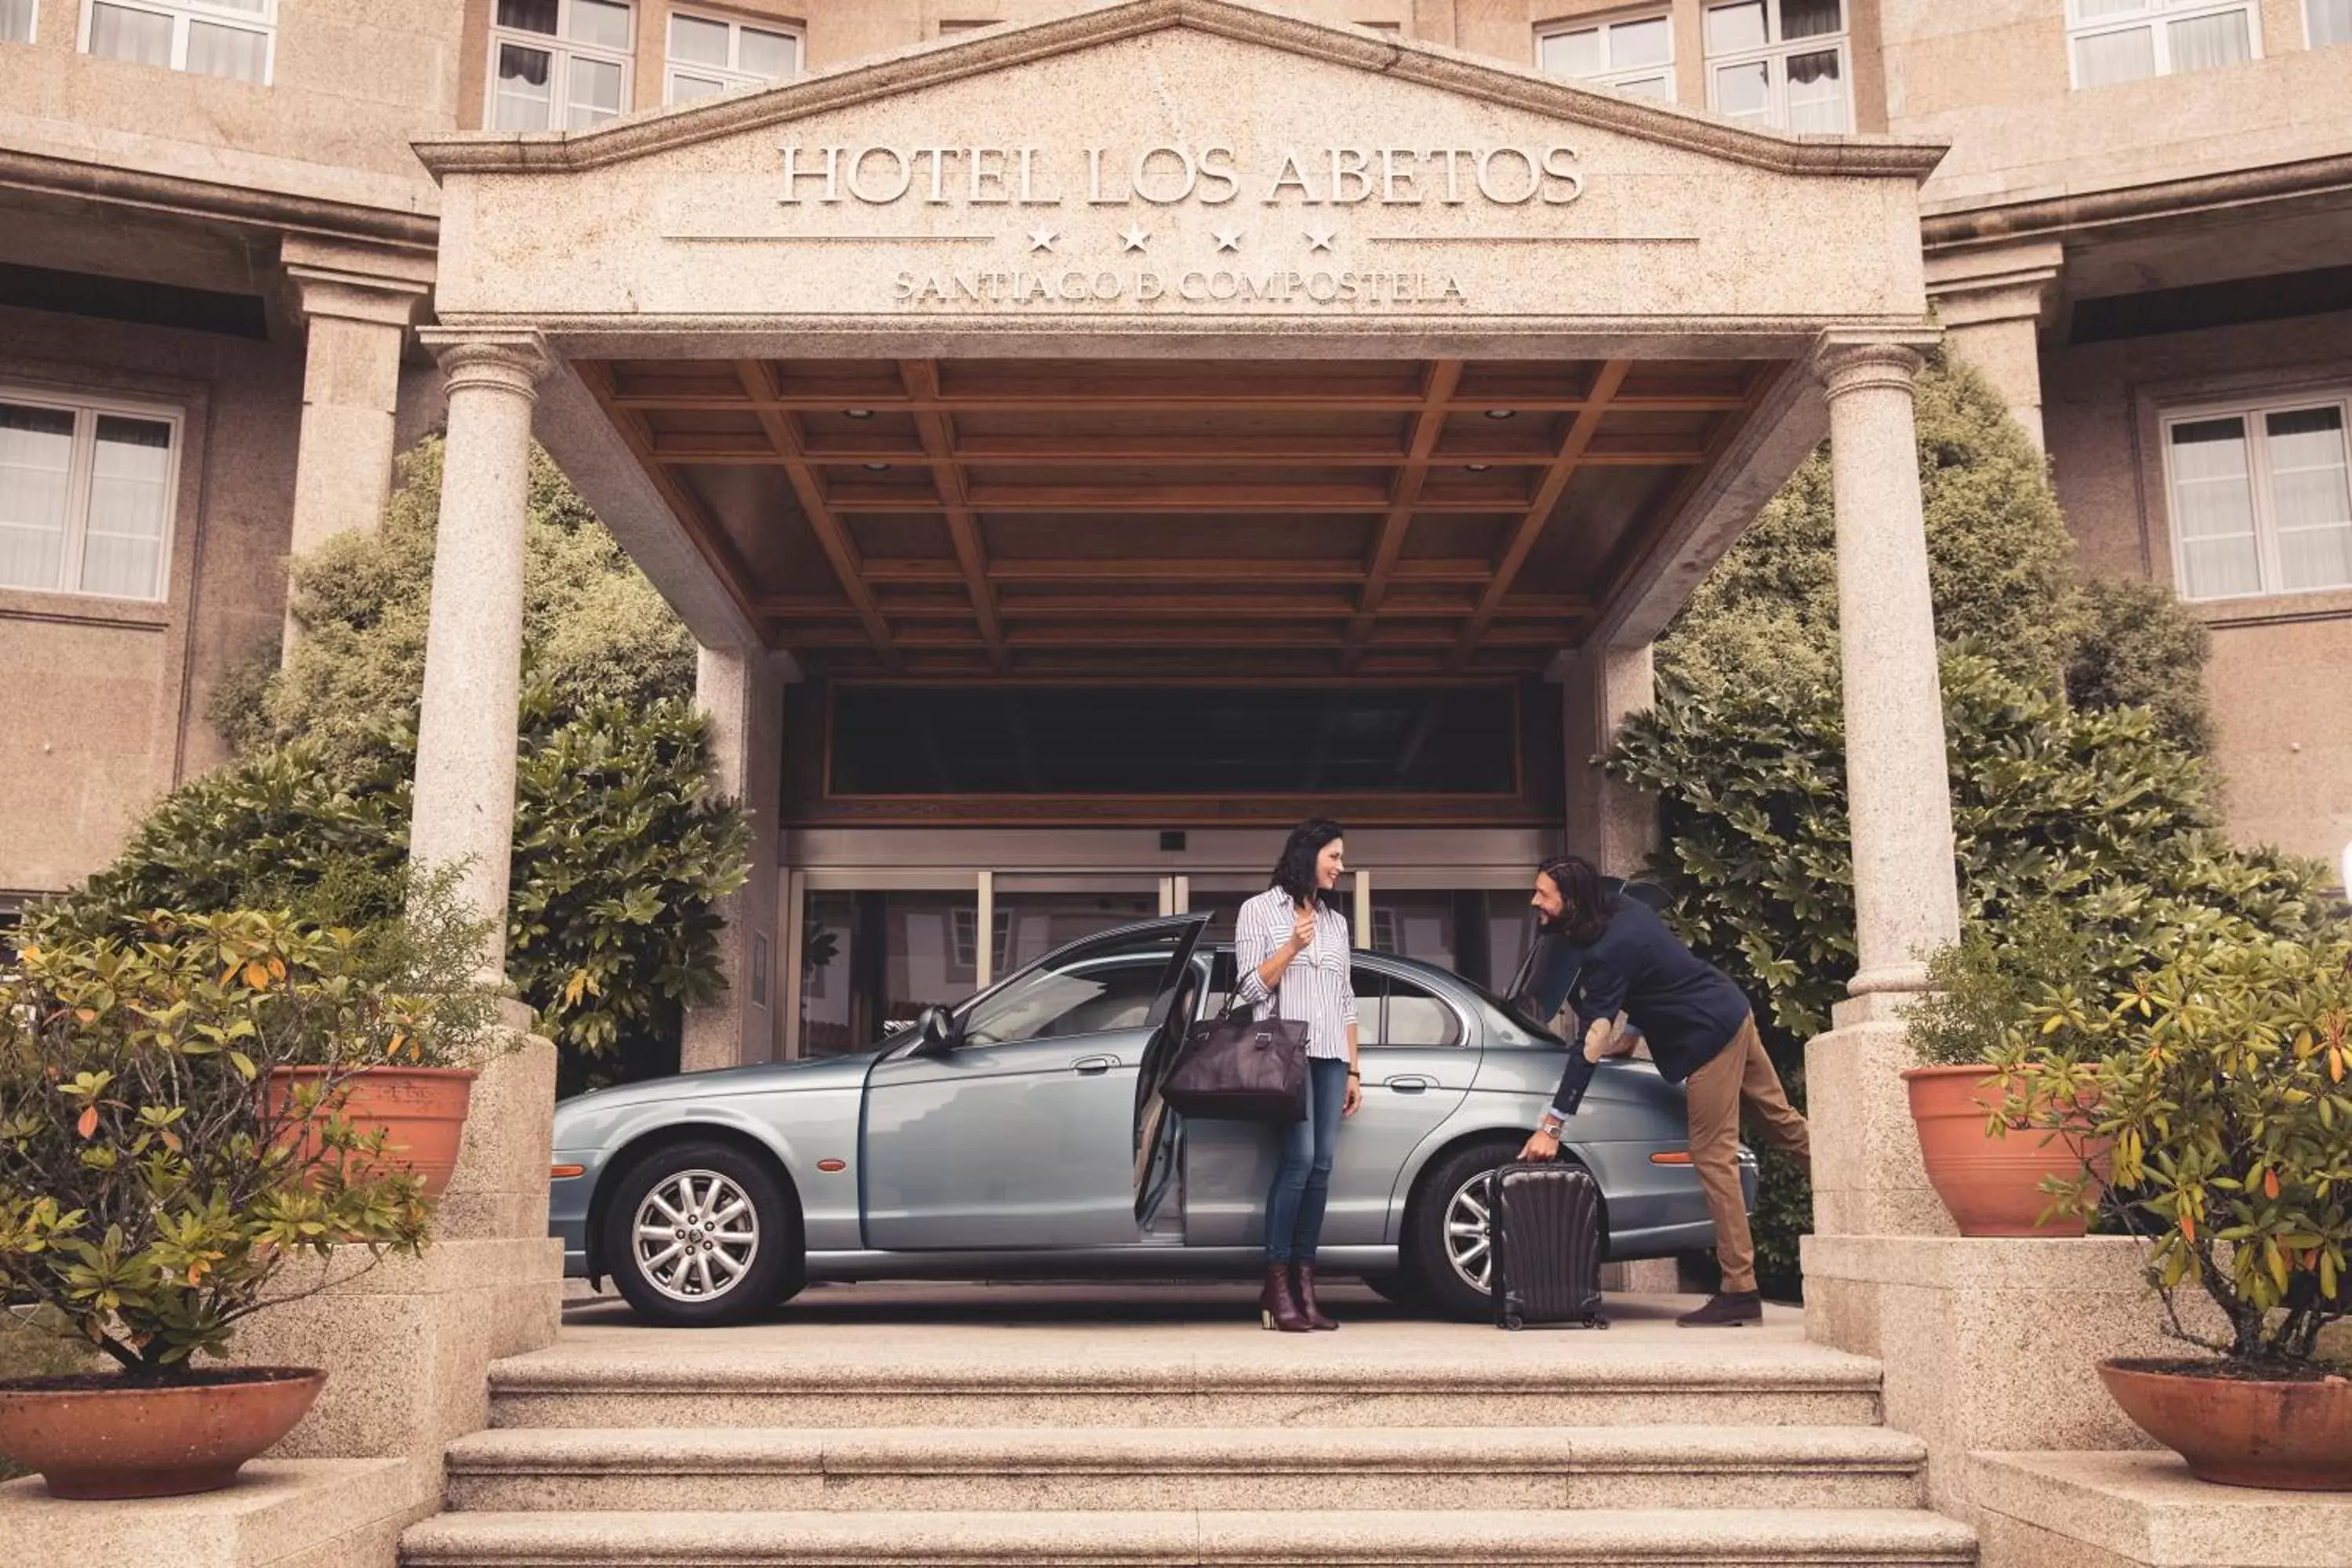 Facade/entrance, Guests in Gran Hotel Los Abetos